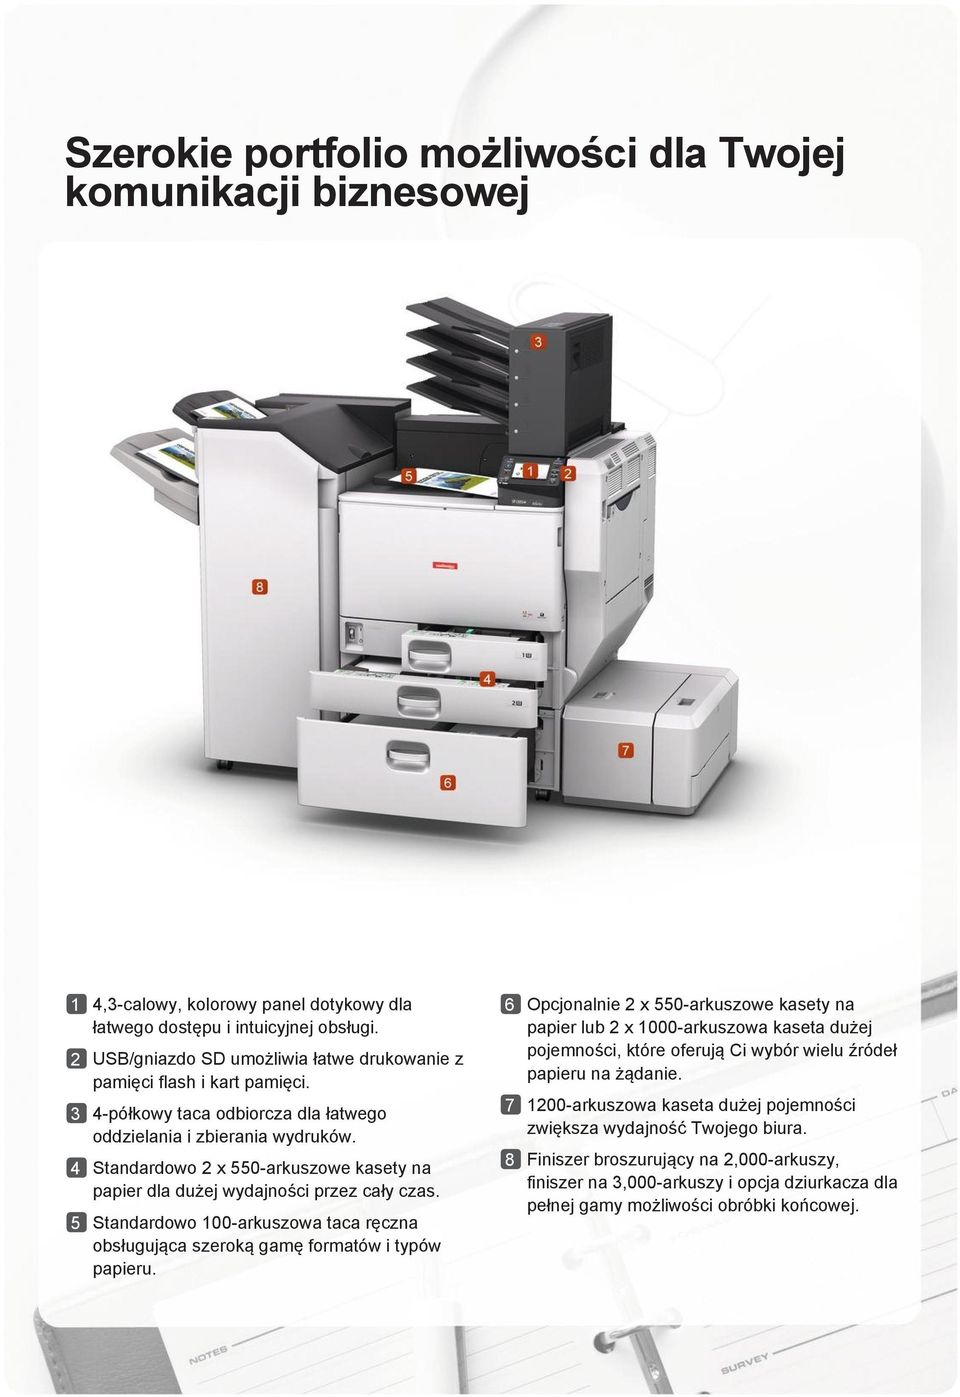 4 Standardowo 2 x 550-arkuszowe kasety na papier dla dużej wydajności przez cały czas. 5 Standardowo 100-arkuszowa taca ręczna obsługująca szeroką gamę formatów i typów papieru.